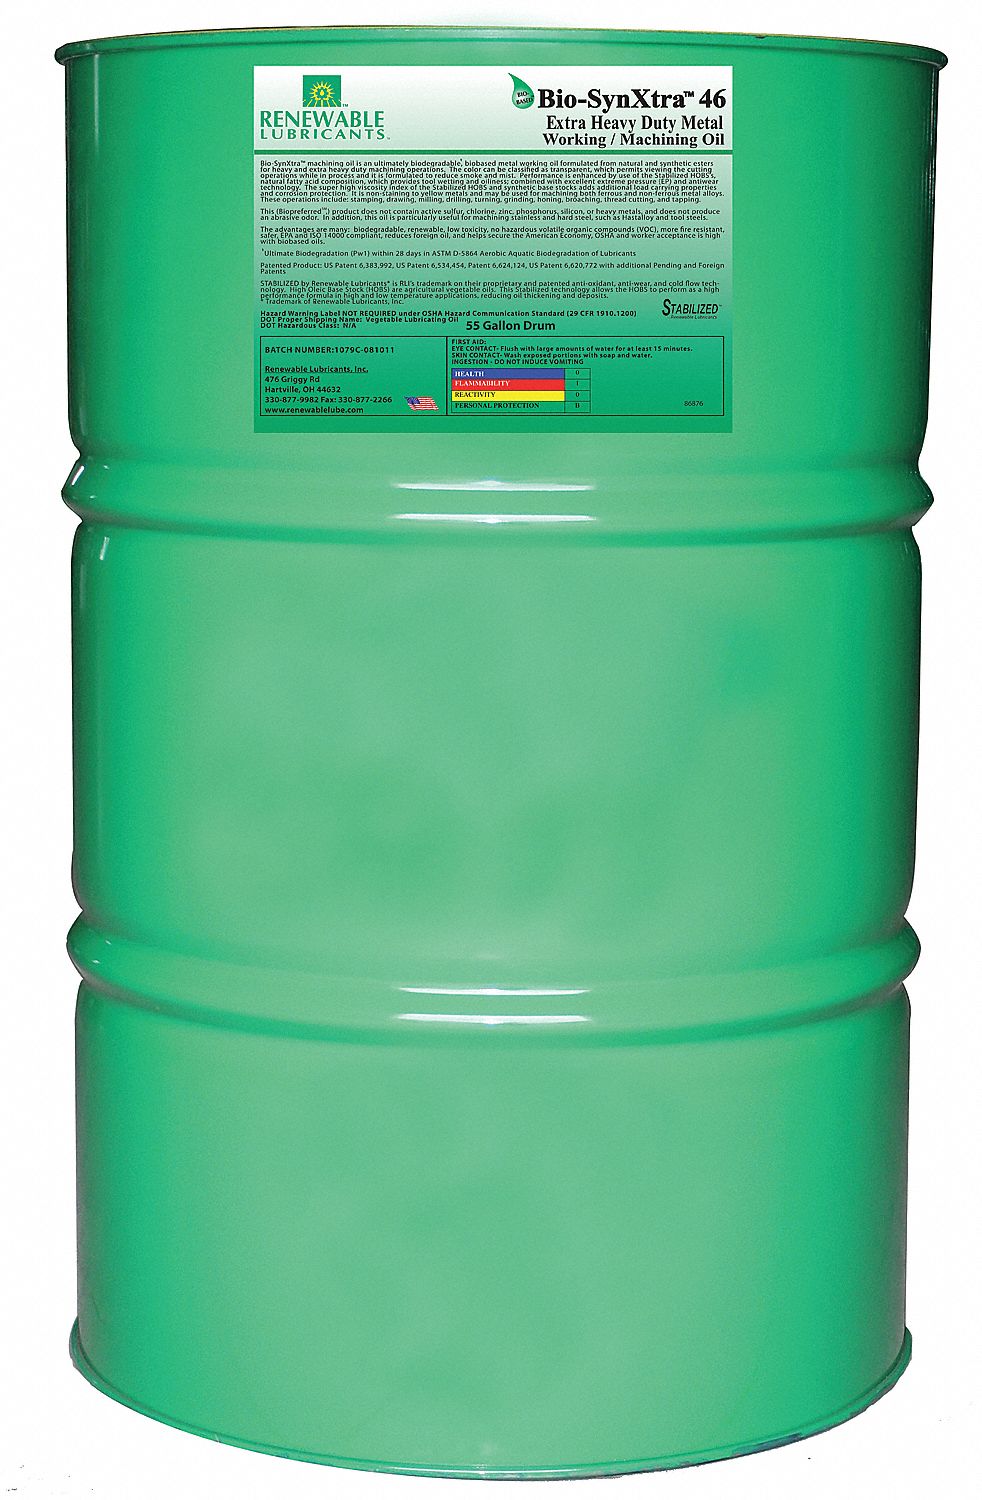 21A540 - Biodegradable Cutting Oil 55 Gal